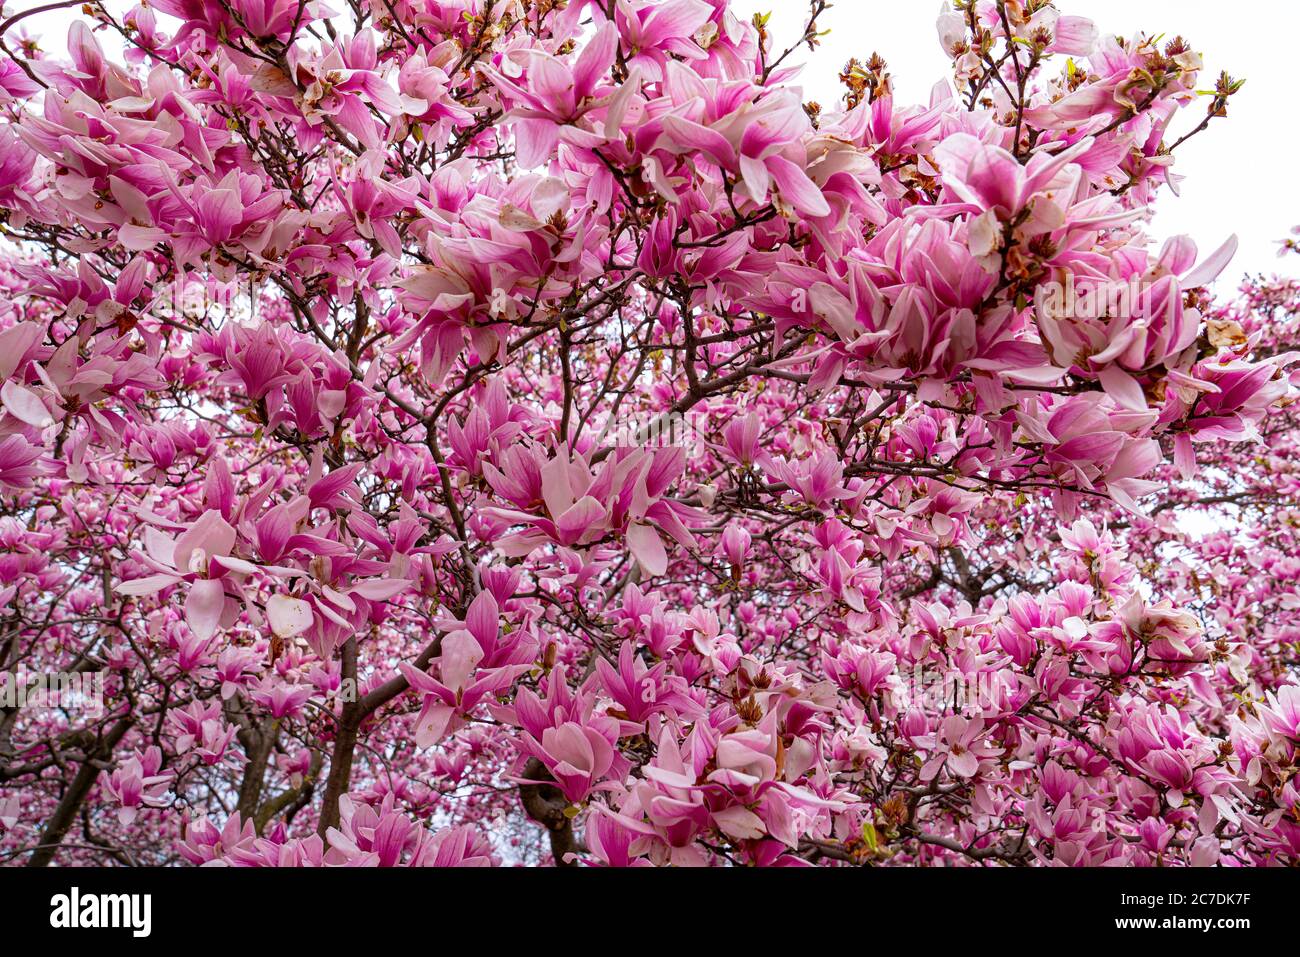 Cerisiers en fleurs, Central Park, New York Banque D'Images